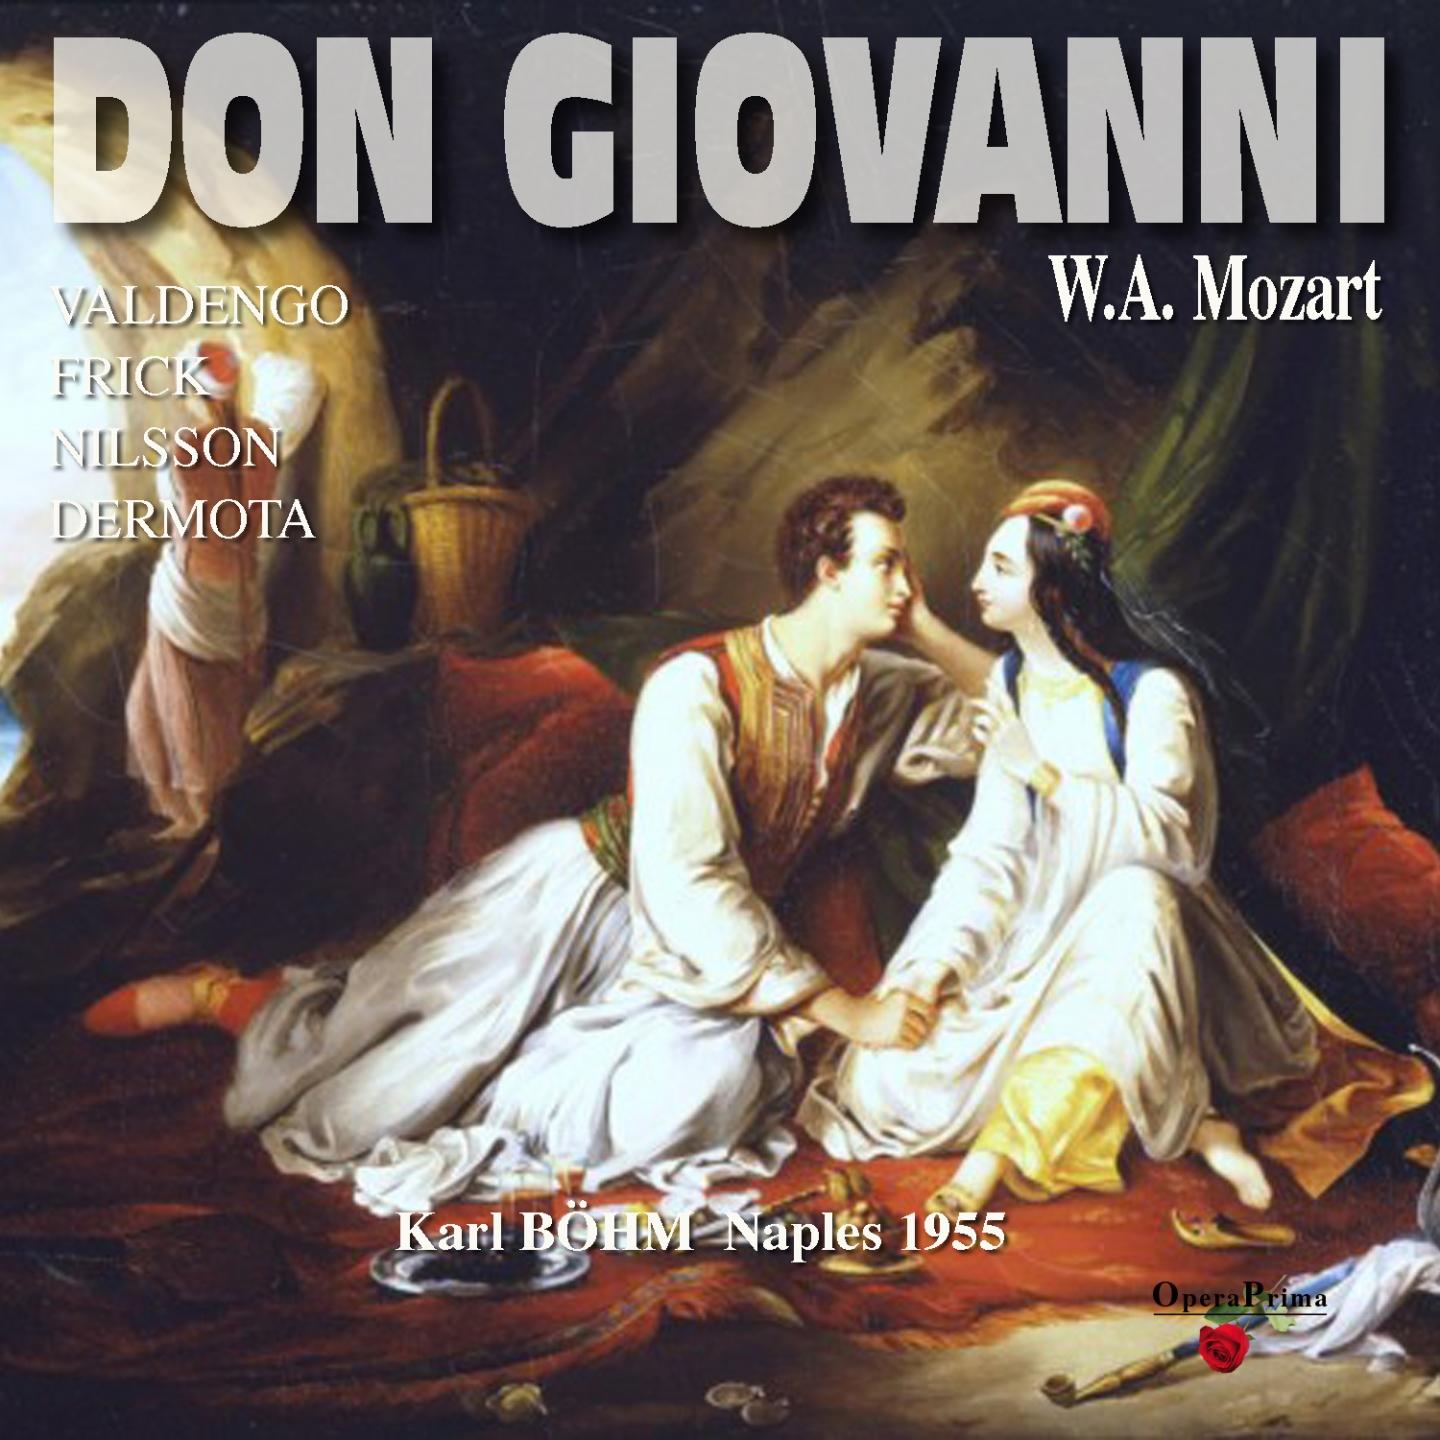 Don Giovanni: Act I - "Notte e giorno faticar"